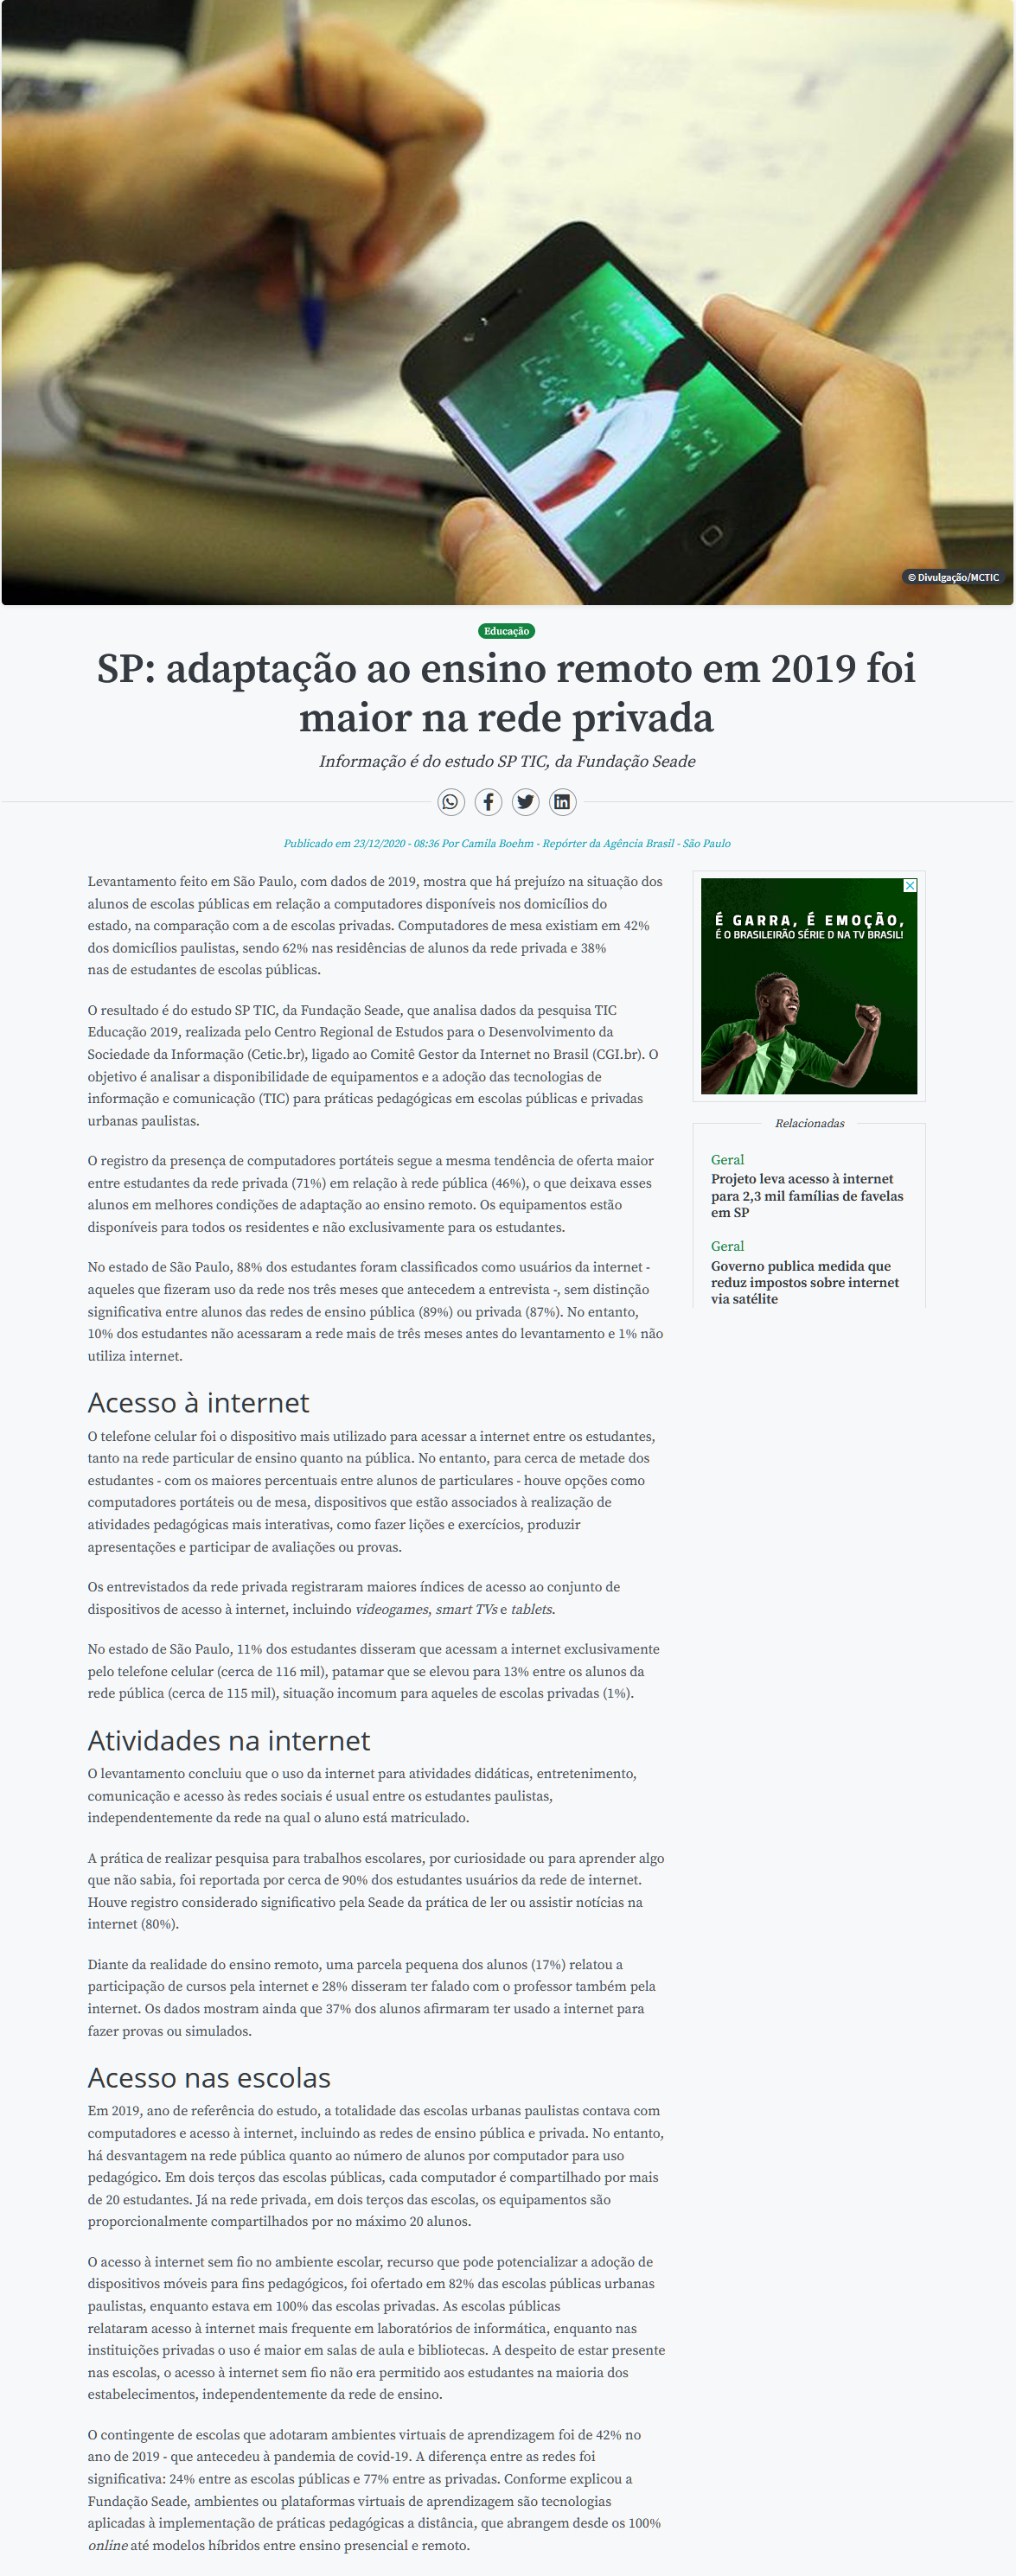 De Boa na Rede': Governo lança projeto sobre o bom uso da internet